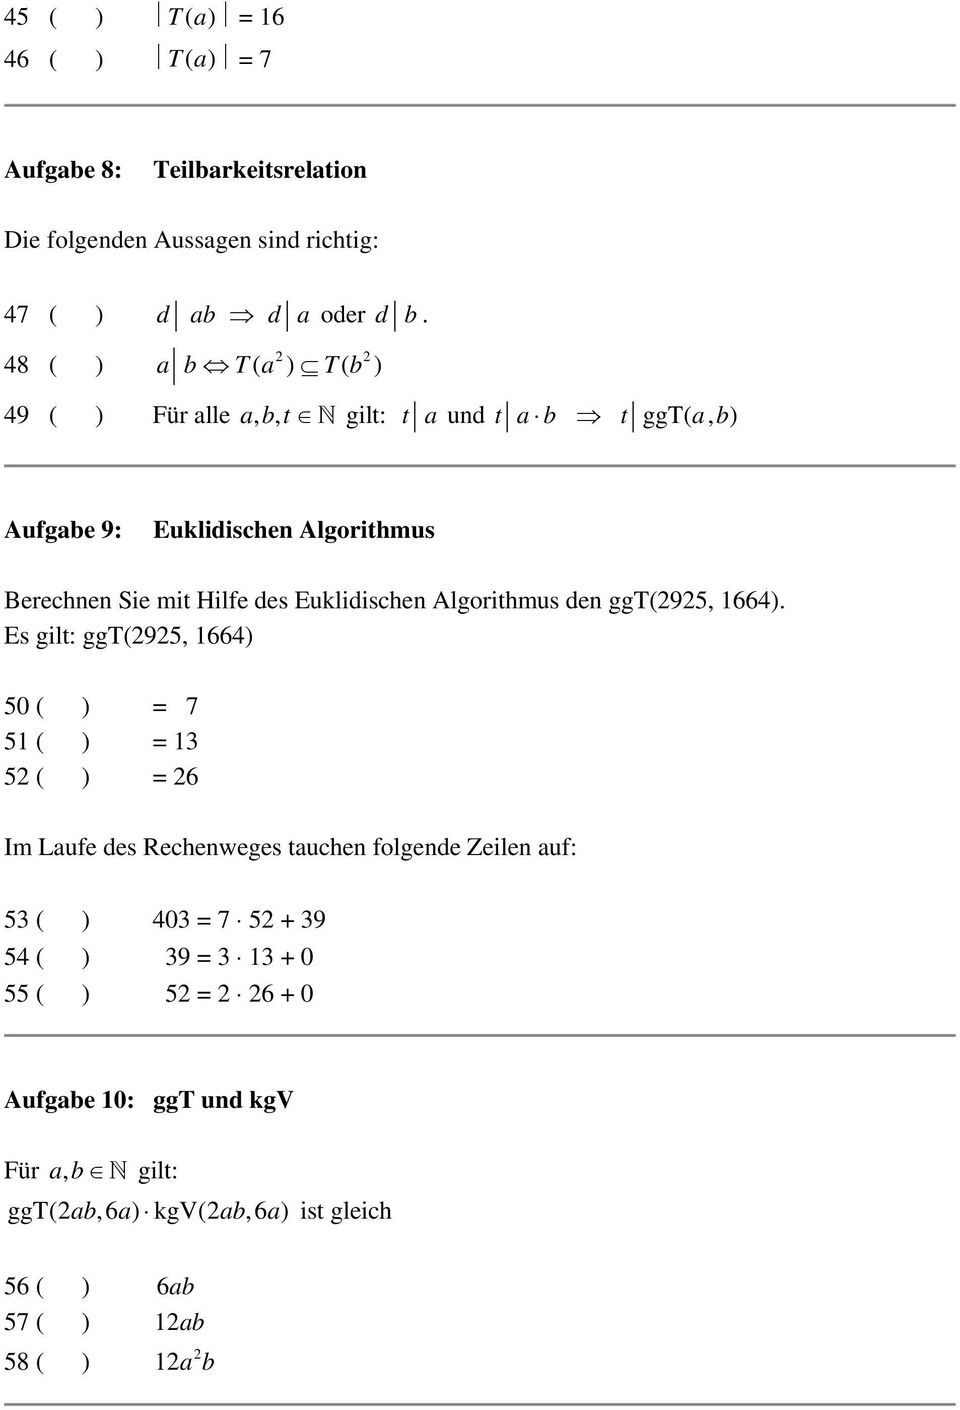 Euklidischen Algorithmus den ggt(2925, 1664).